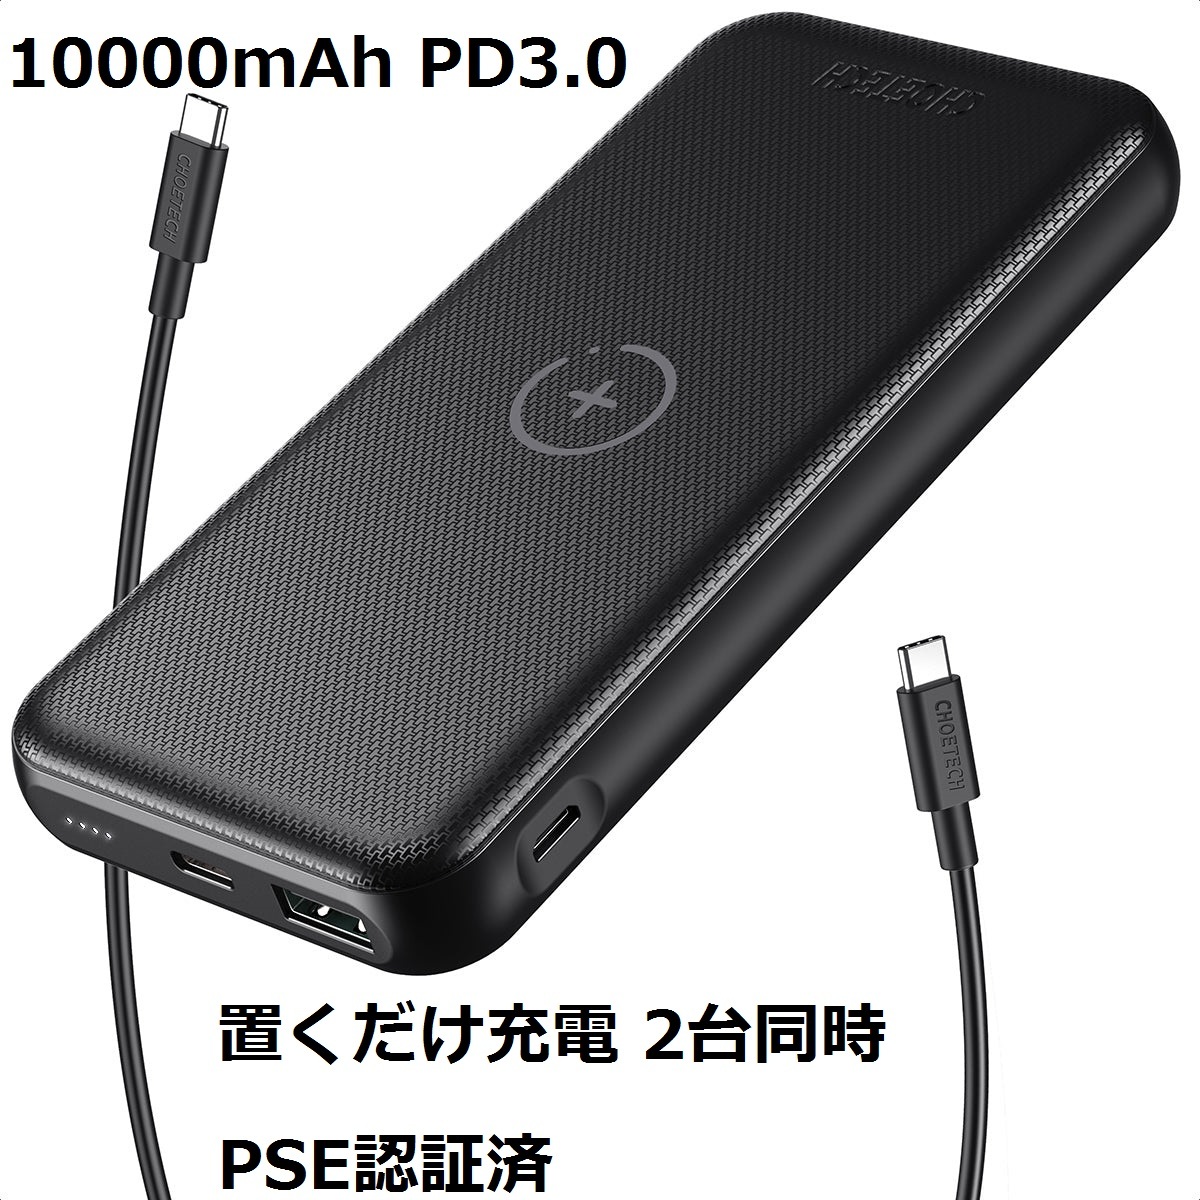 新品☆ワイヤレス モバイルバッテリー 急速充電 10000mAh PD3.0 QC 2台同時 PSE認証済 薄型 置くだけ充電 iPhone Android対応 B650_画像1